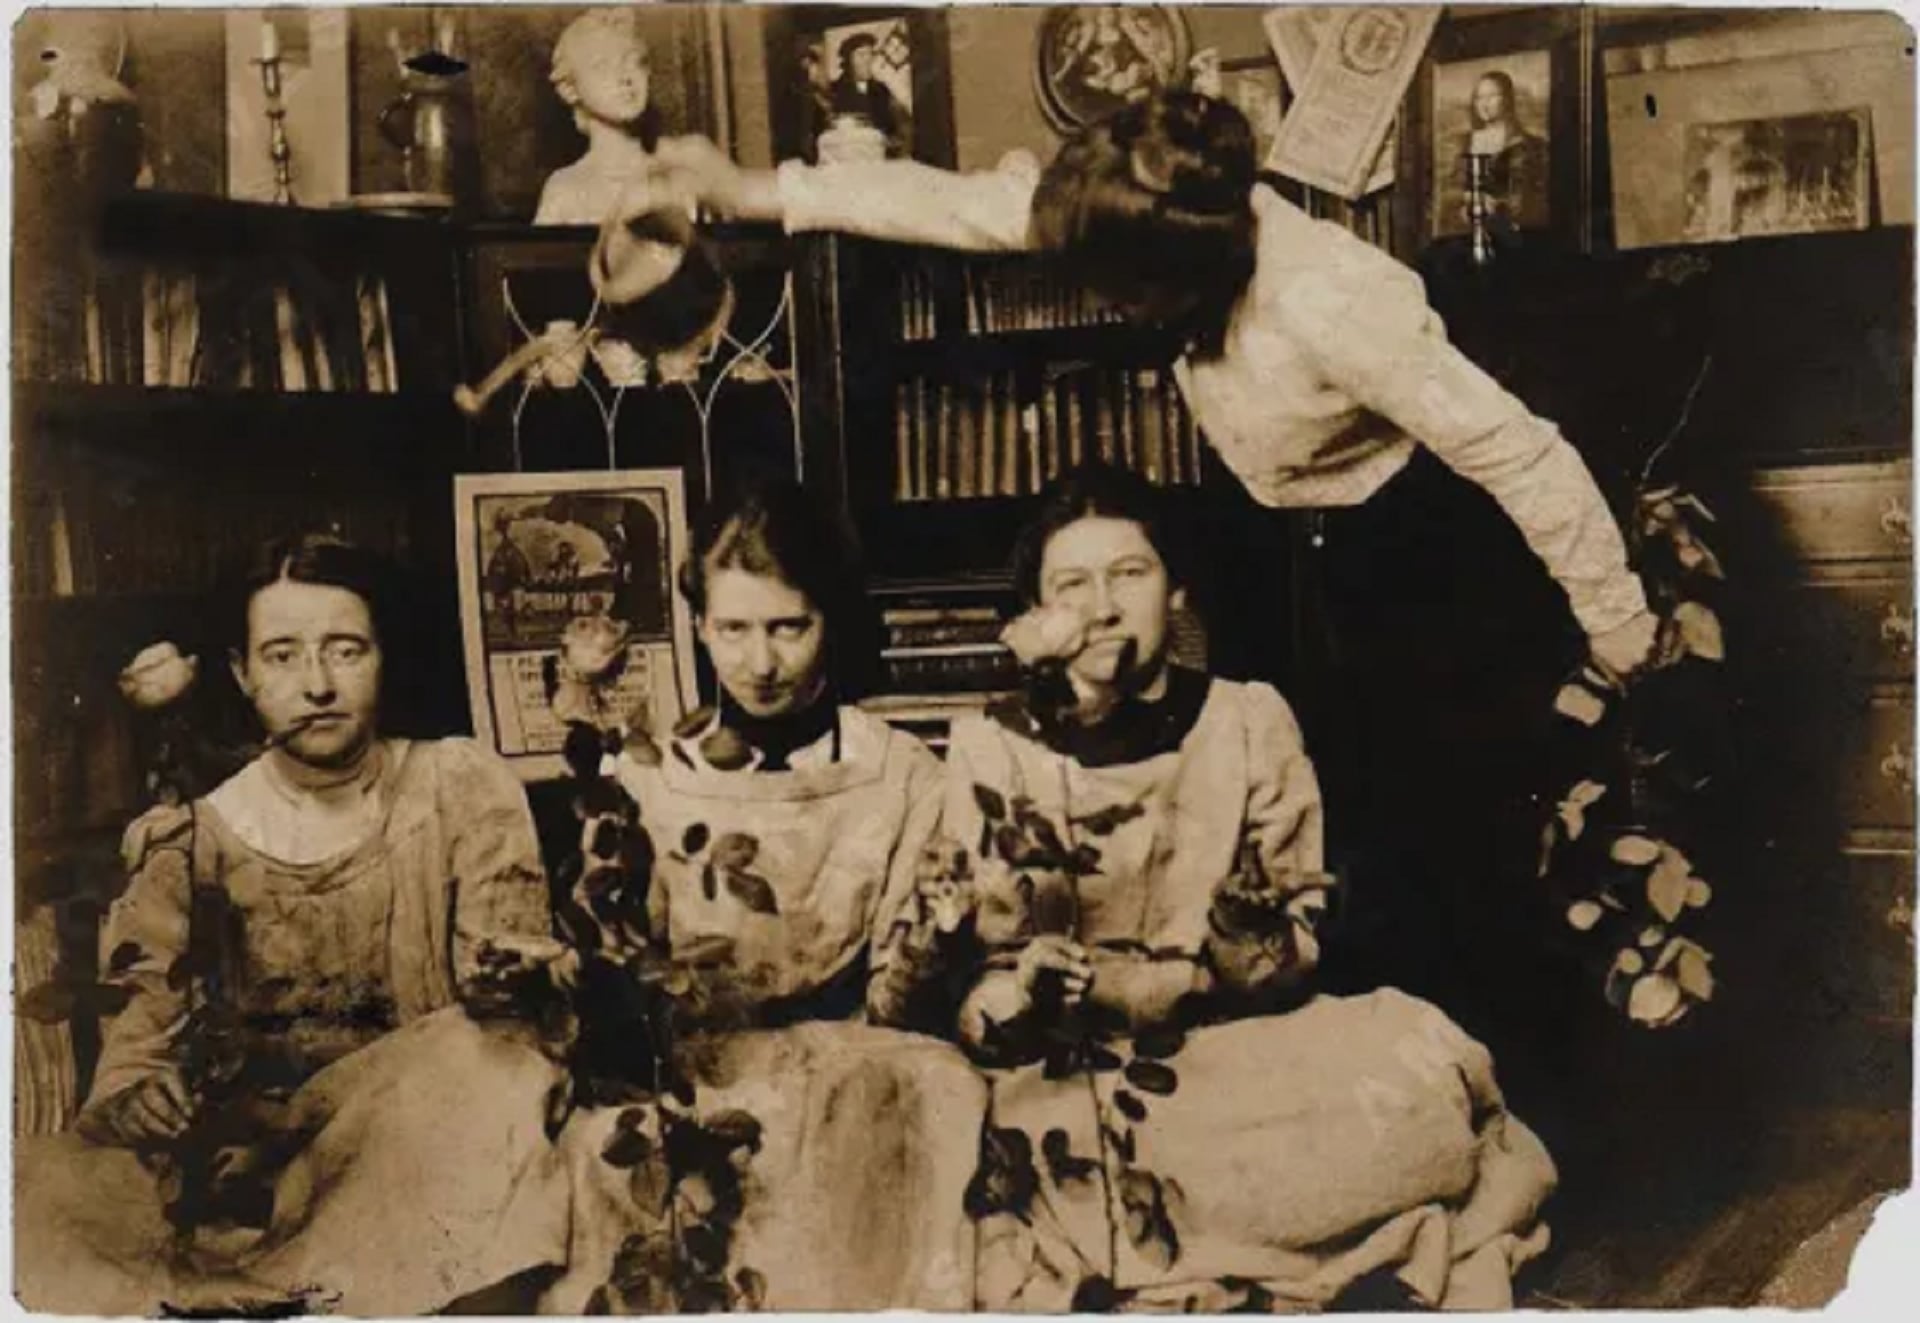 Green, Oakley y Smith sentadas, cada una sosteniendo una rosa, mientras Cozens sostiene una regadera sobre sus cabezas (Foto: Wikipedia)